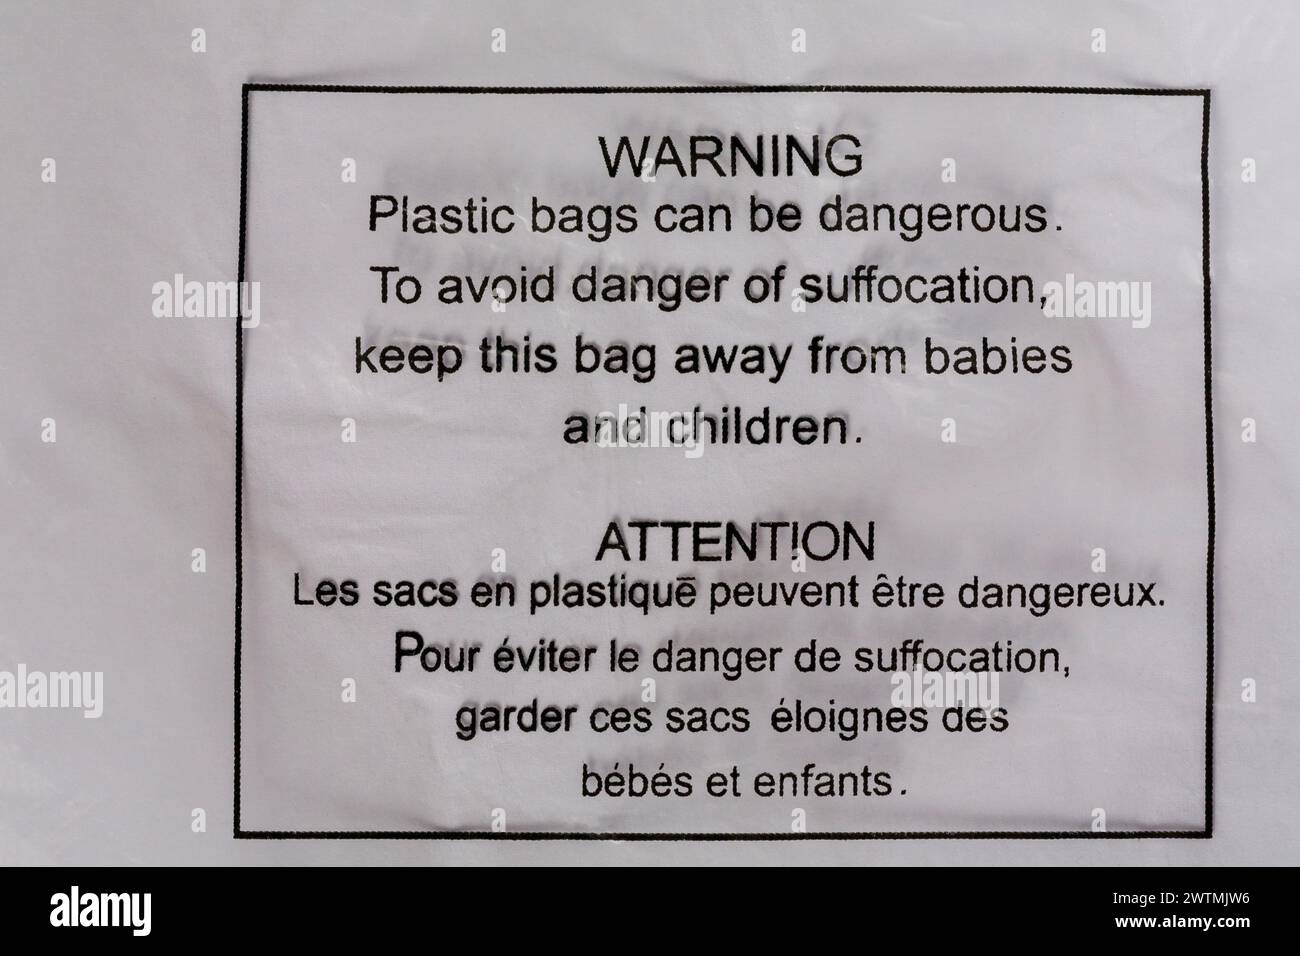 Warnung Plastikbeutel können gefährlich sein um Erstickungsgefahr zu vermeiden Halten Sie diese Tasche fern von Babys und Kindern Details auf Plastiktüte Französisch Englisch Stockfoto